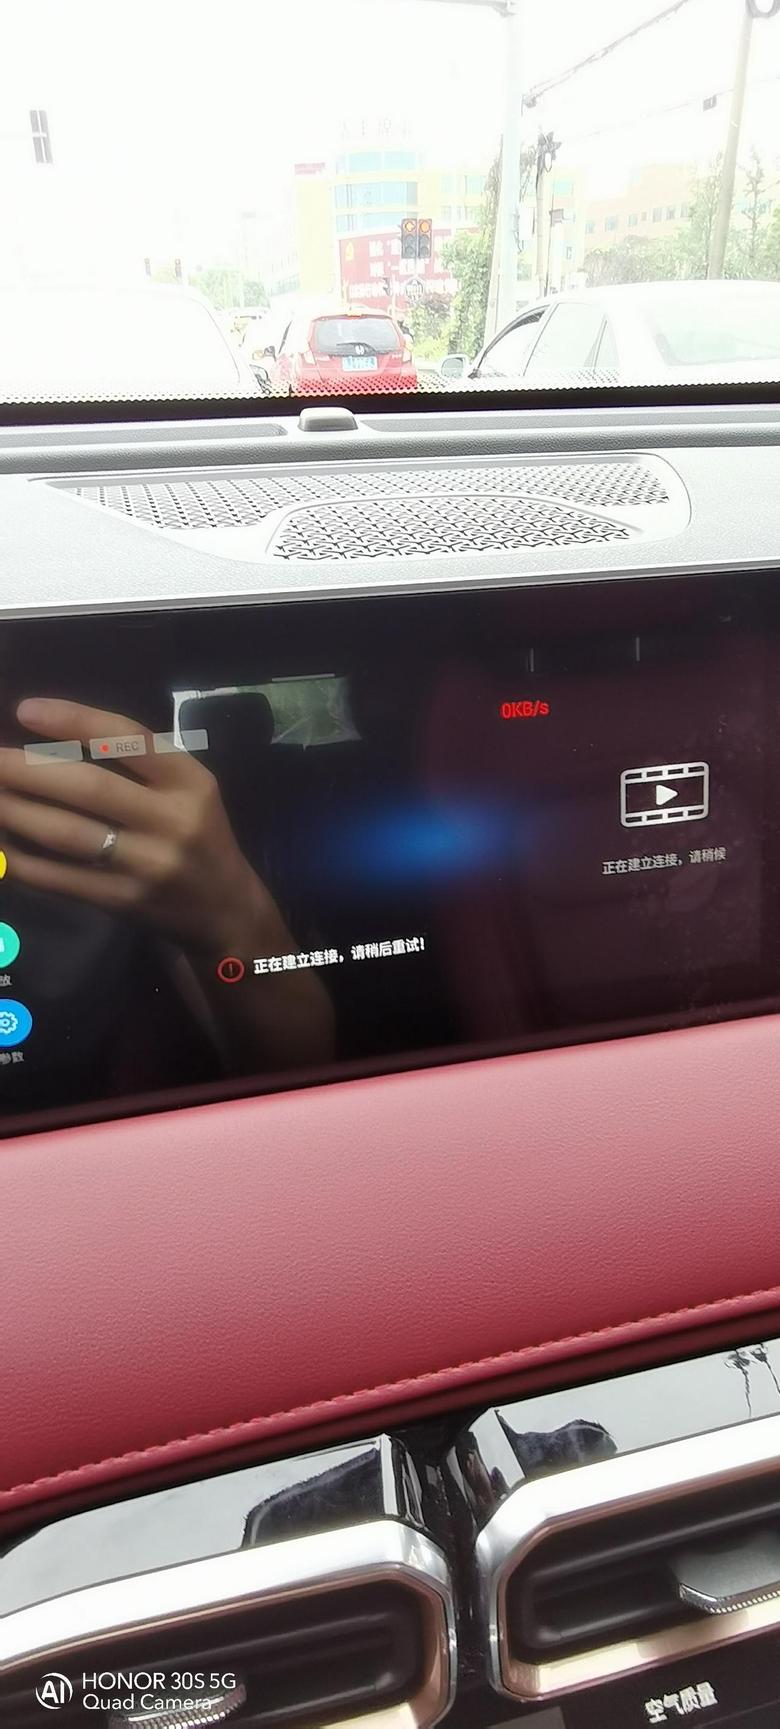 捷途x70 plus 车辆是启动的连接不上行车记录仪有没有知道的朋友